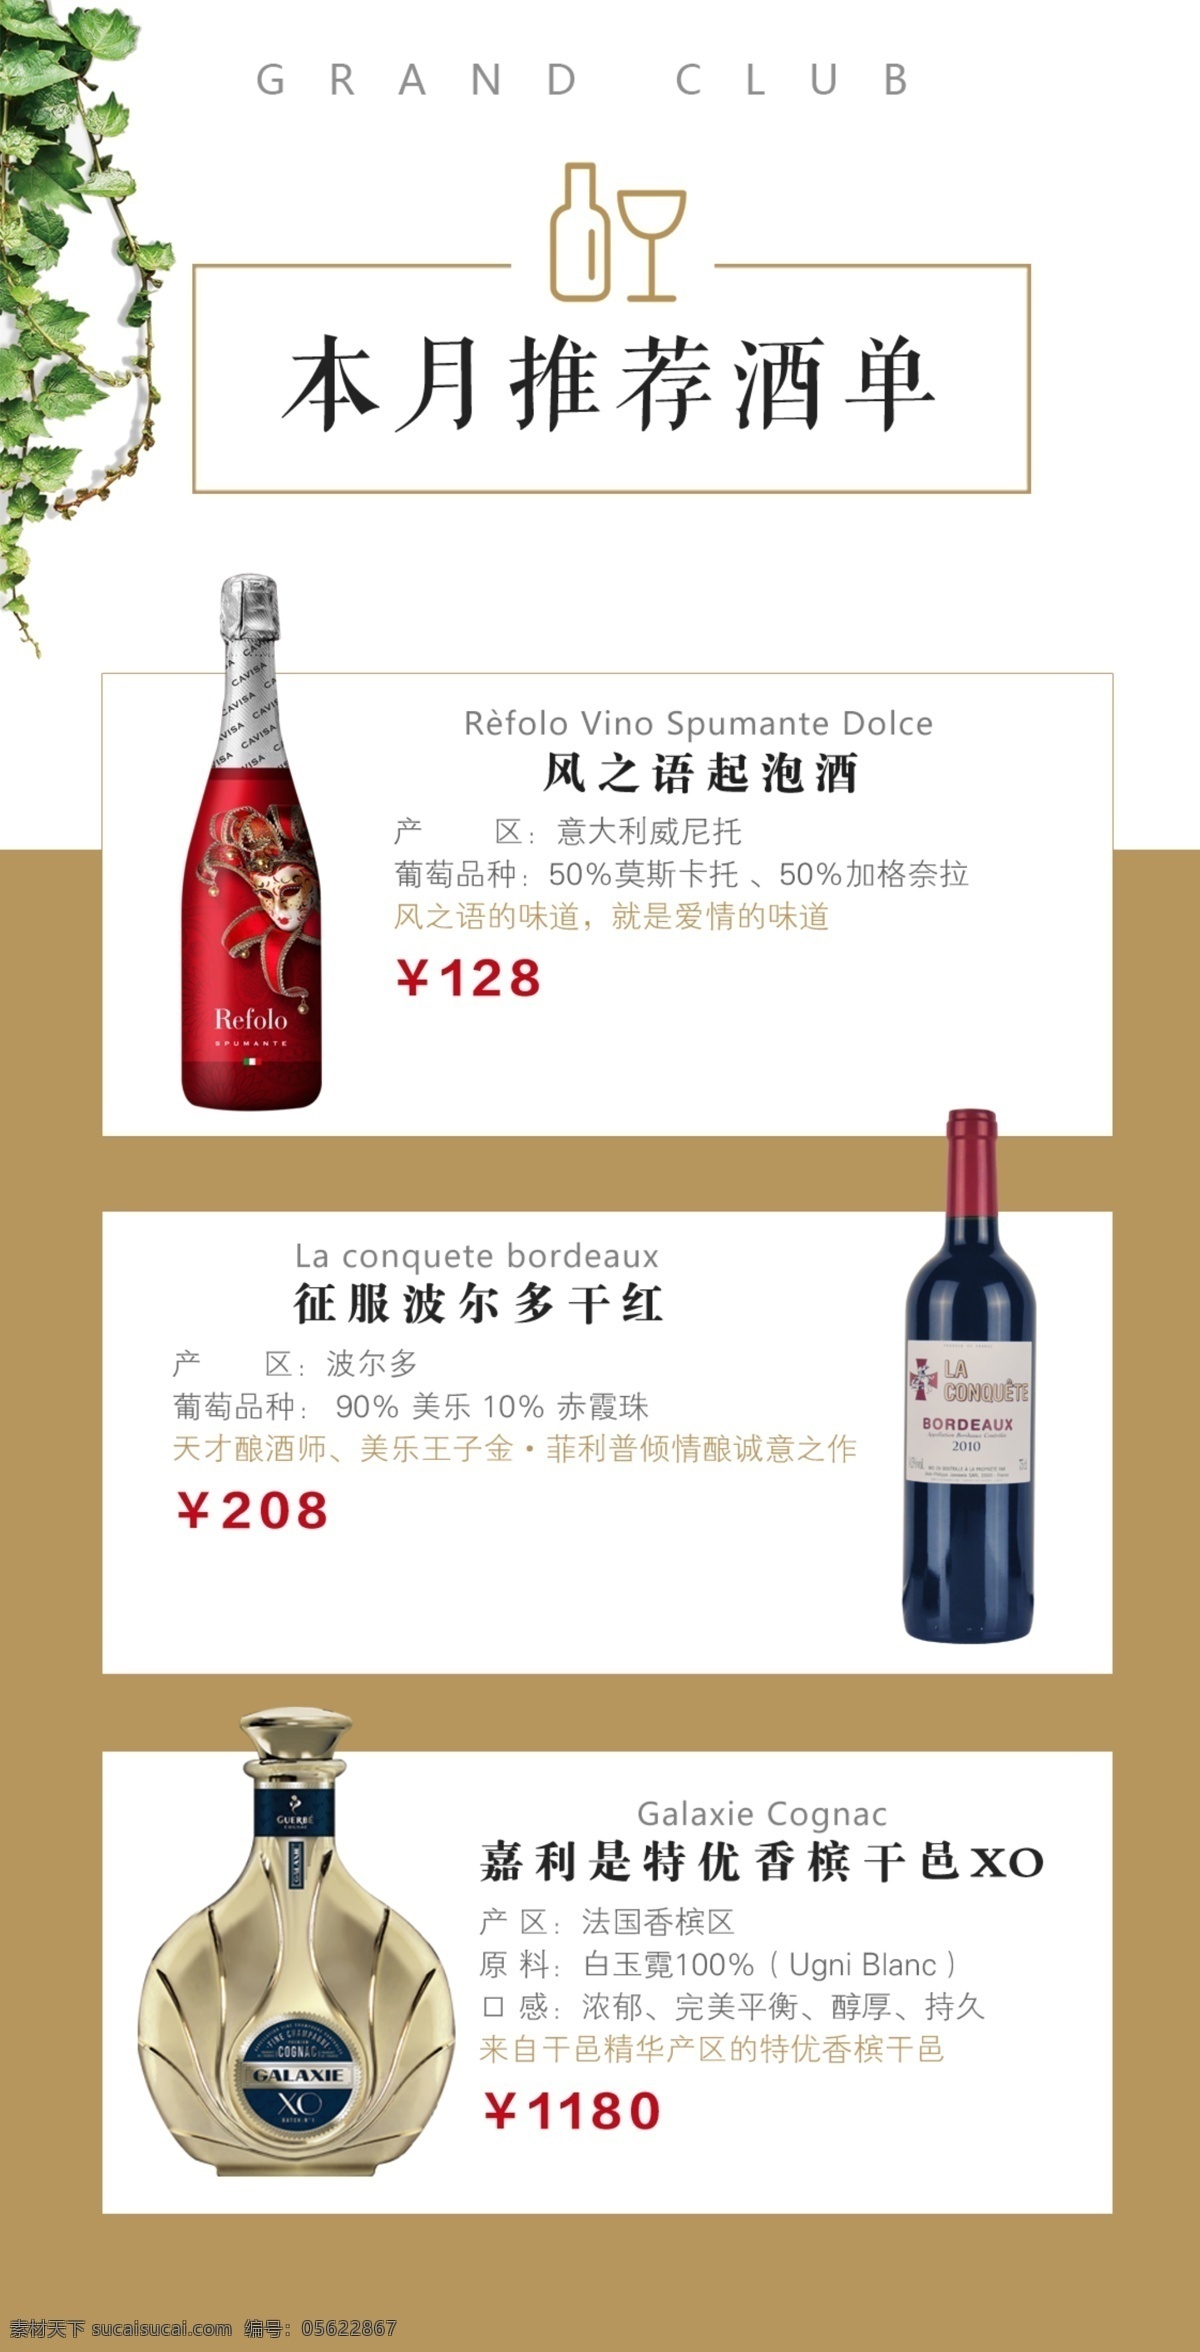 葡萄酒 酒 单 菜单 红酒 酒单 餐品 简约 极简 酒水类海报 分层